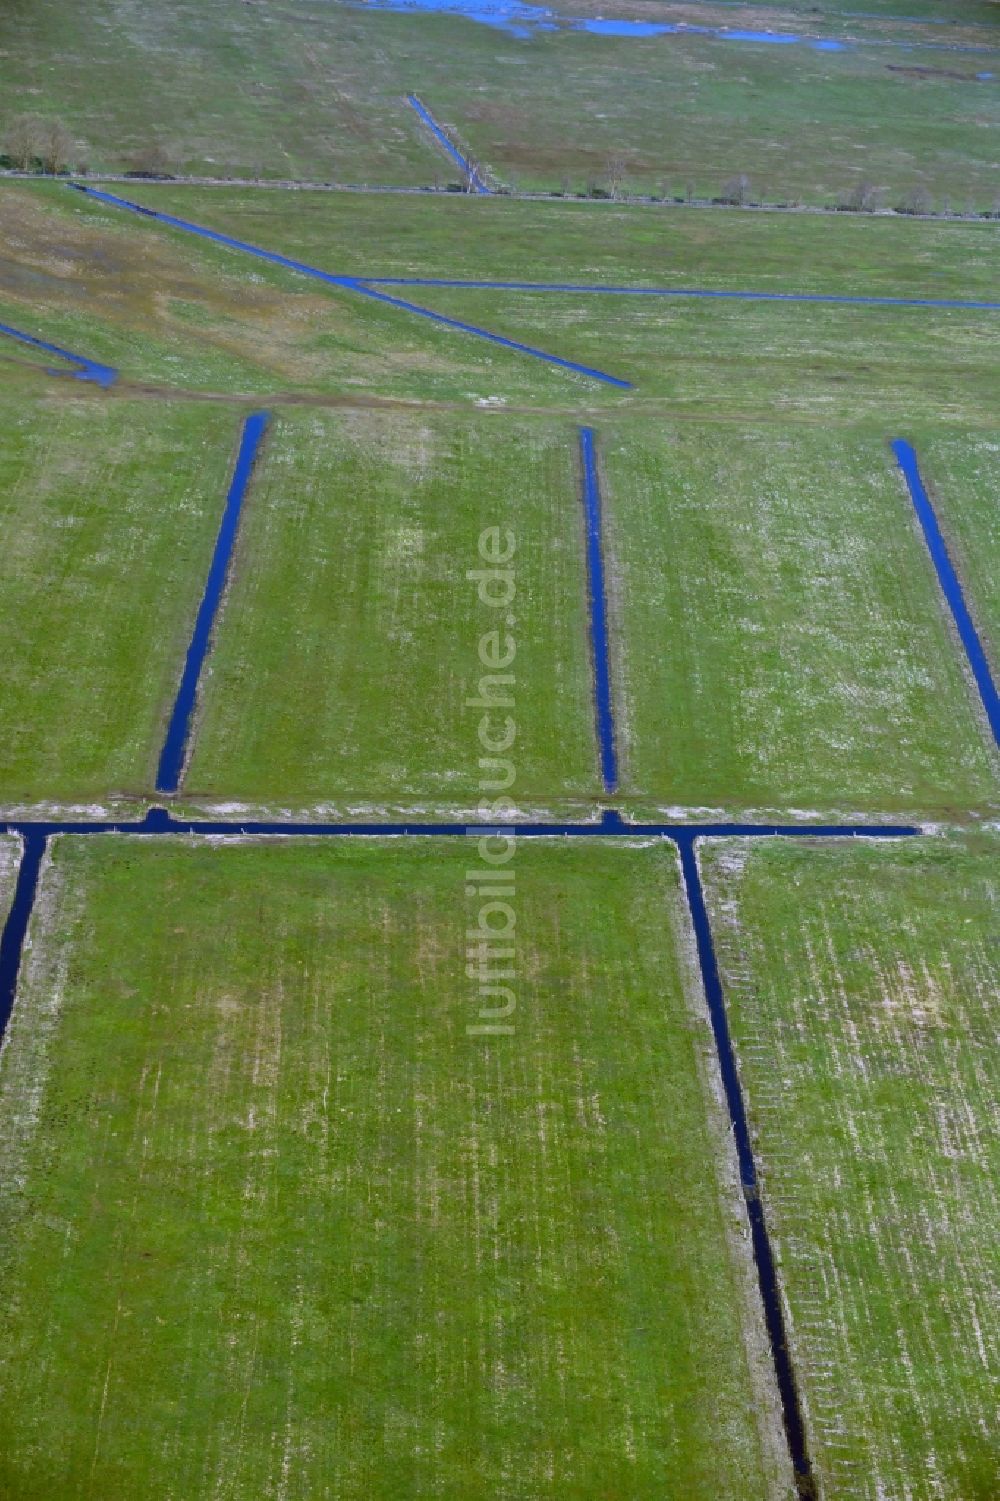 Luftbild Zirchow - Melorationsgraben und Kanäle auf landwirtschaftlichen Feldern in Zirchow im Bundesland Mecklenburg-Vorpommern, Deutschland